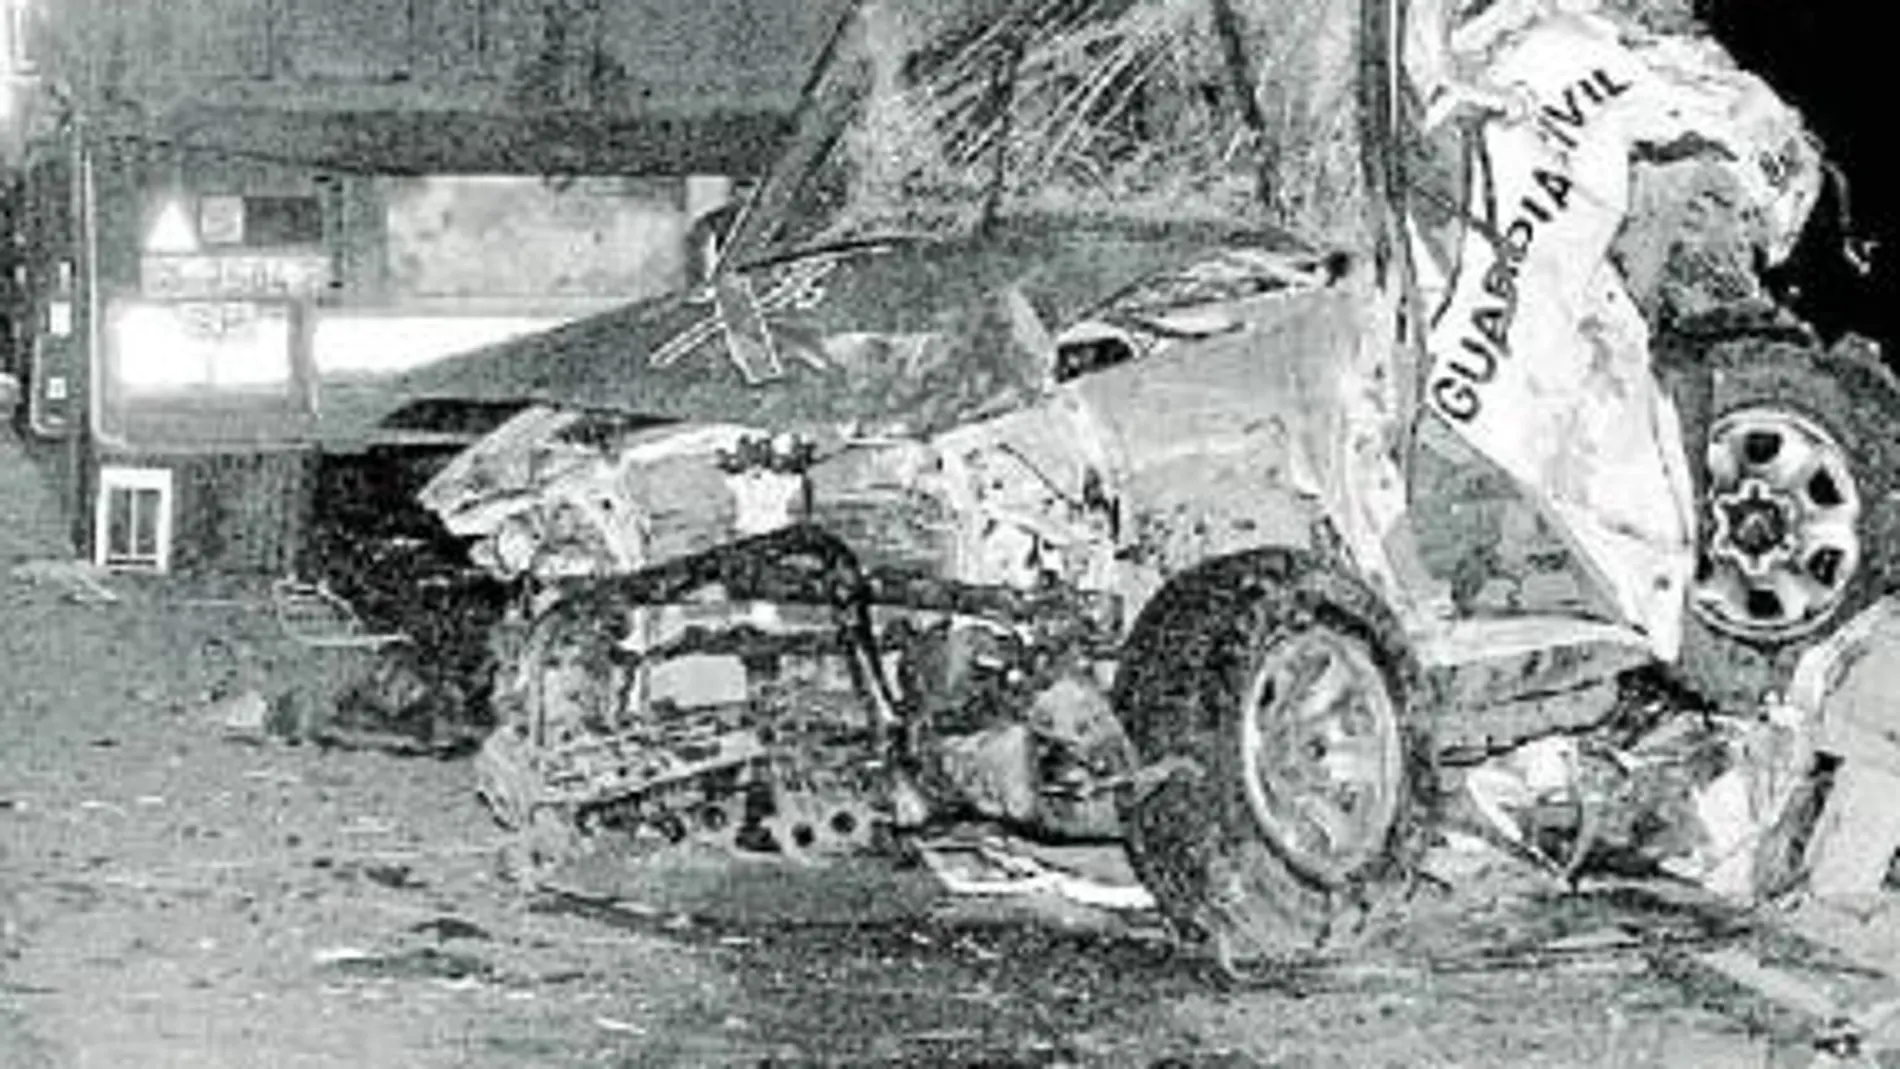 El accidente se produjo a las tres de la mañana del 8 de marzo de 2005 cuando los agentes estaban en un control antiterrorista en la A-1